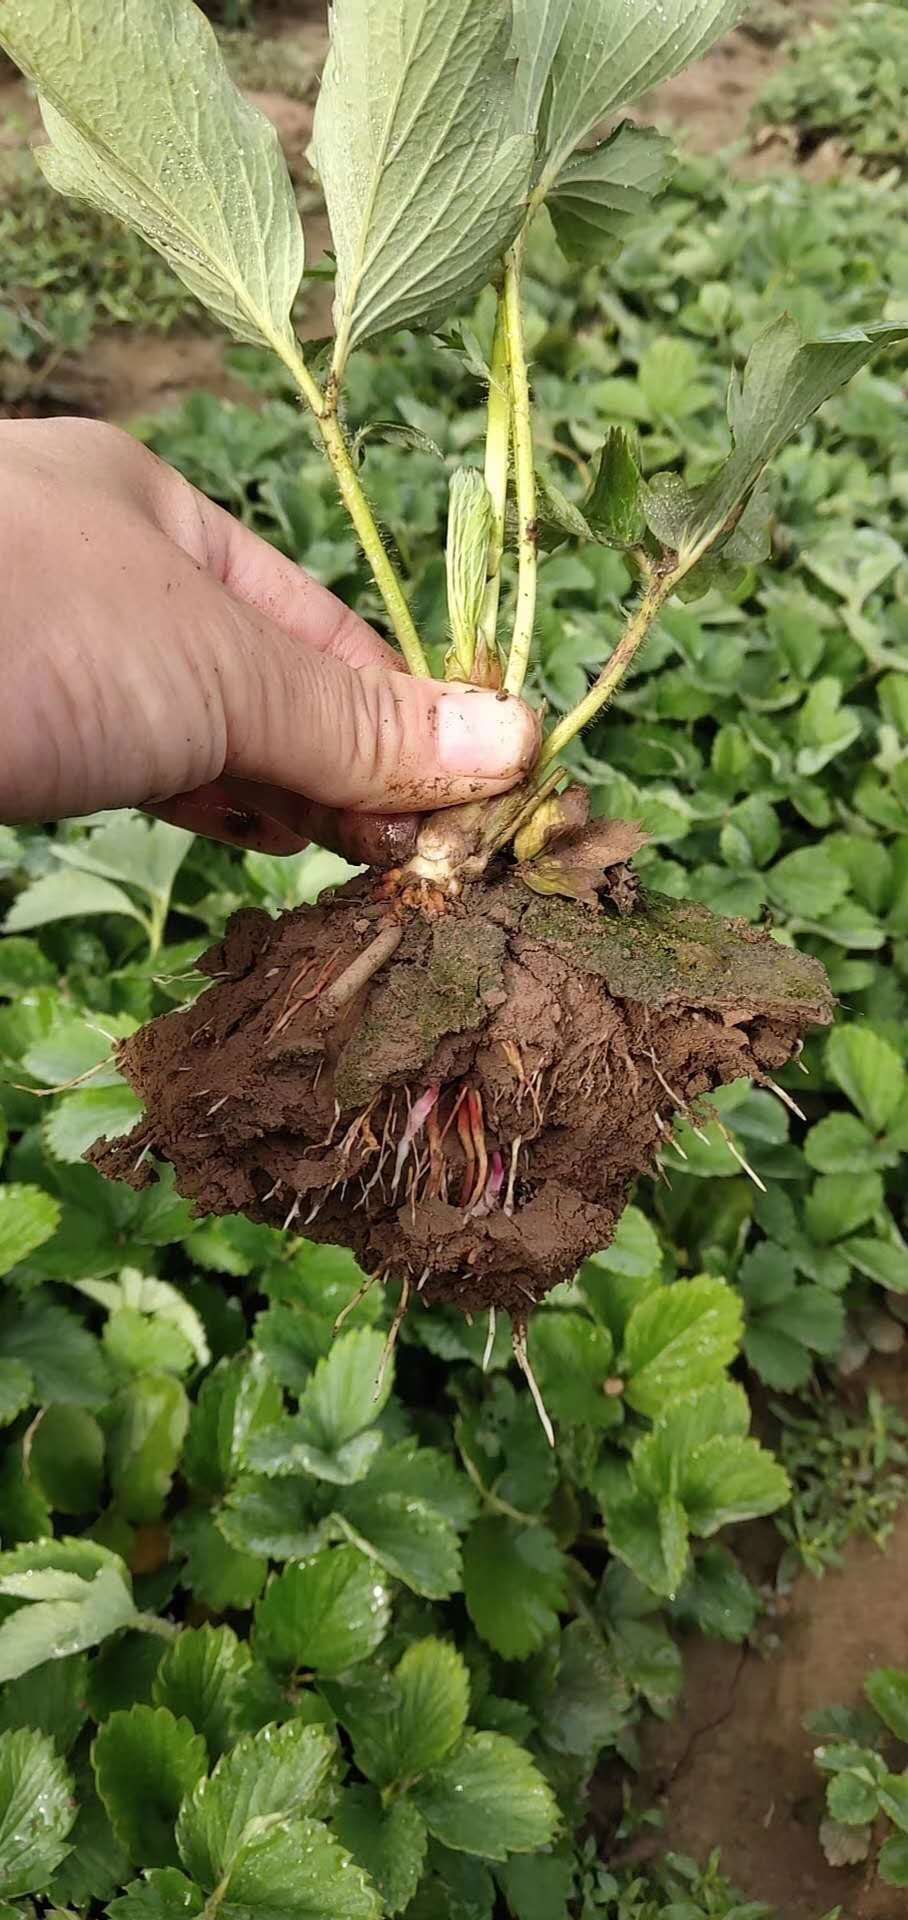 青海白雪公主草莓品种病虫害低组培草莓苗